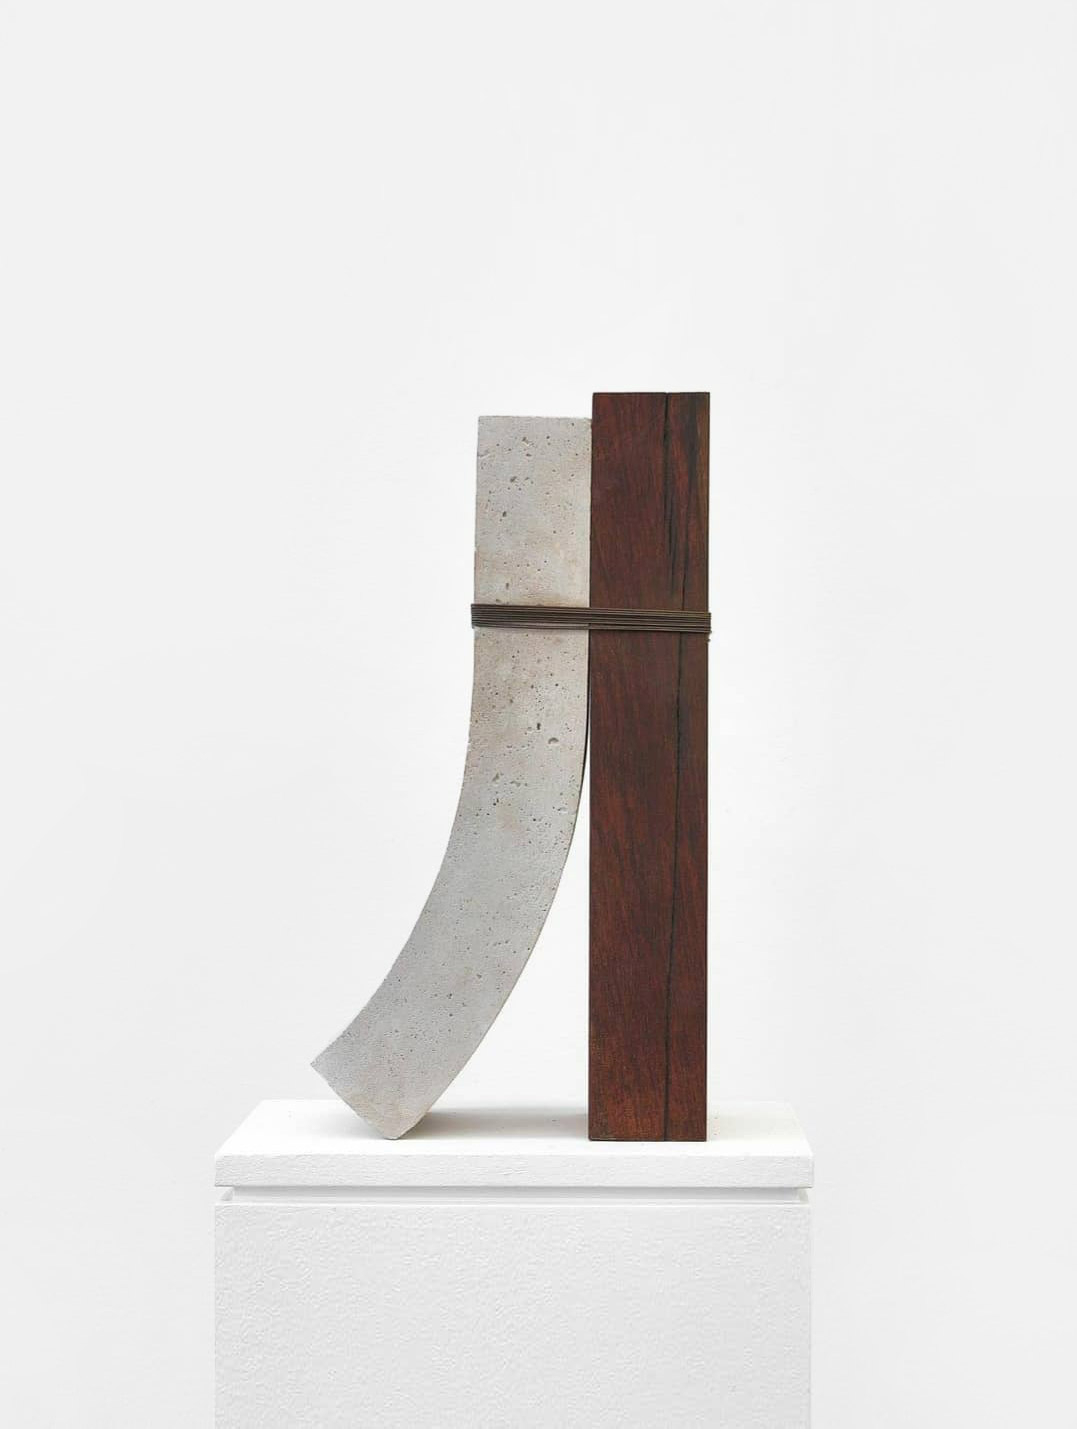 Bruno Cançado, 2020, concrete, wood, wire, 46 x 25 x 15 cm